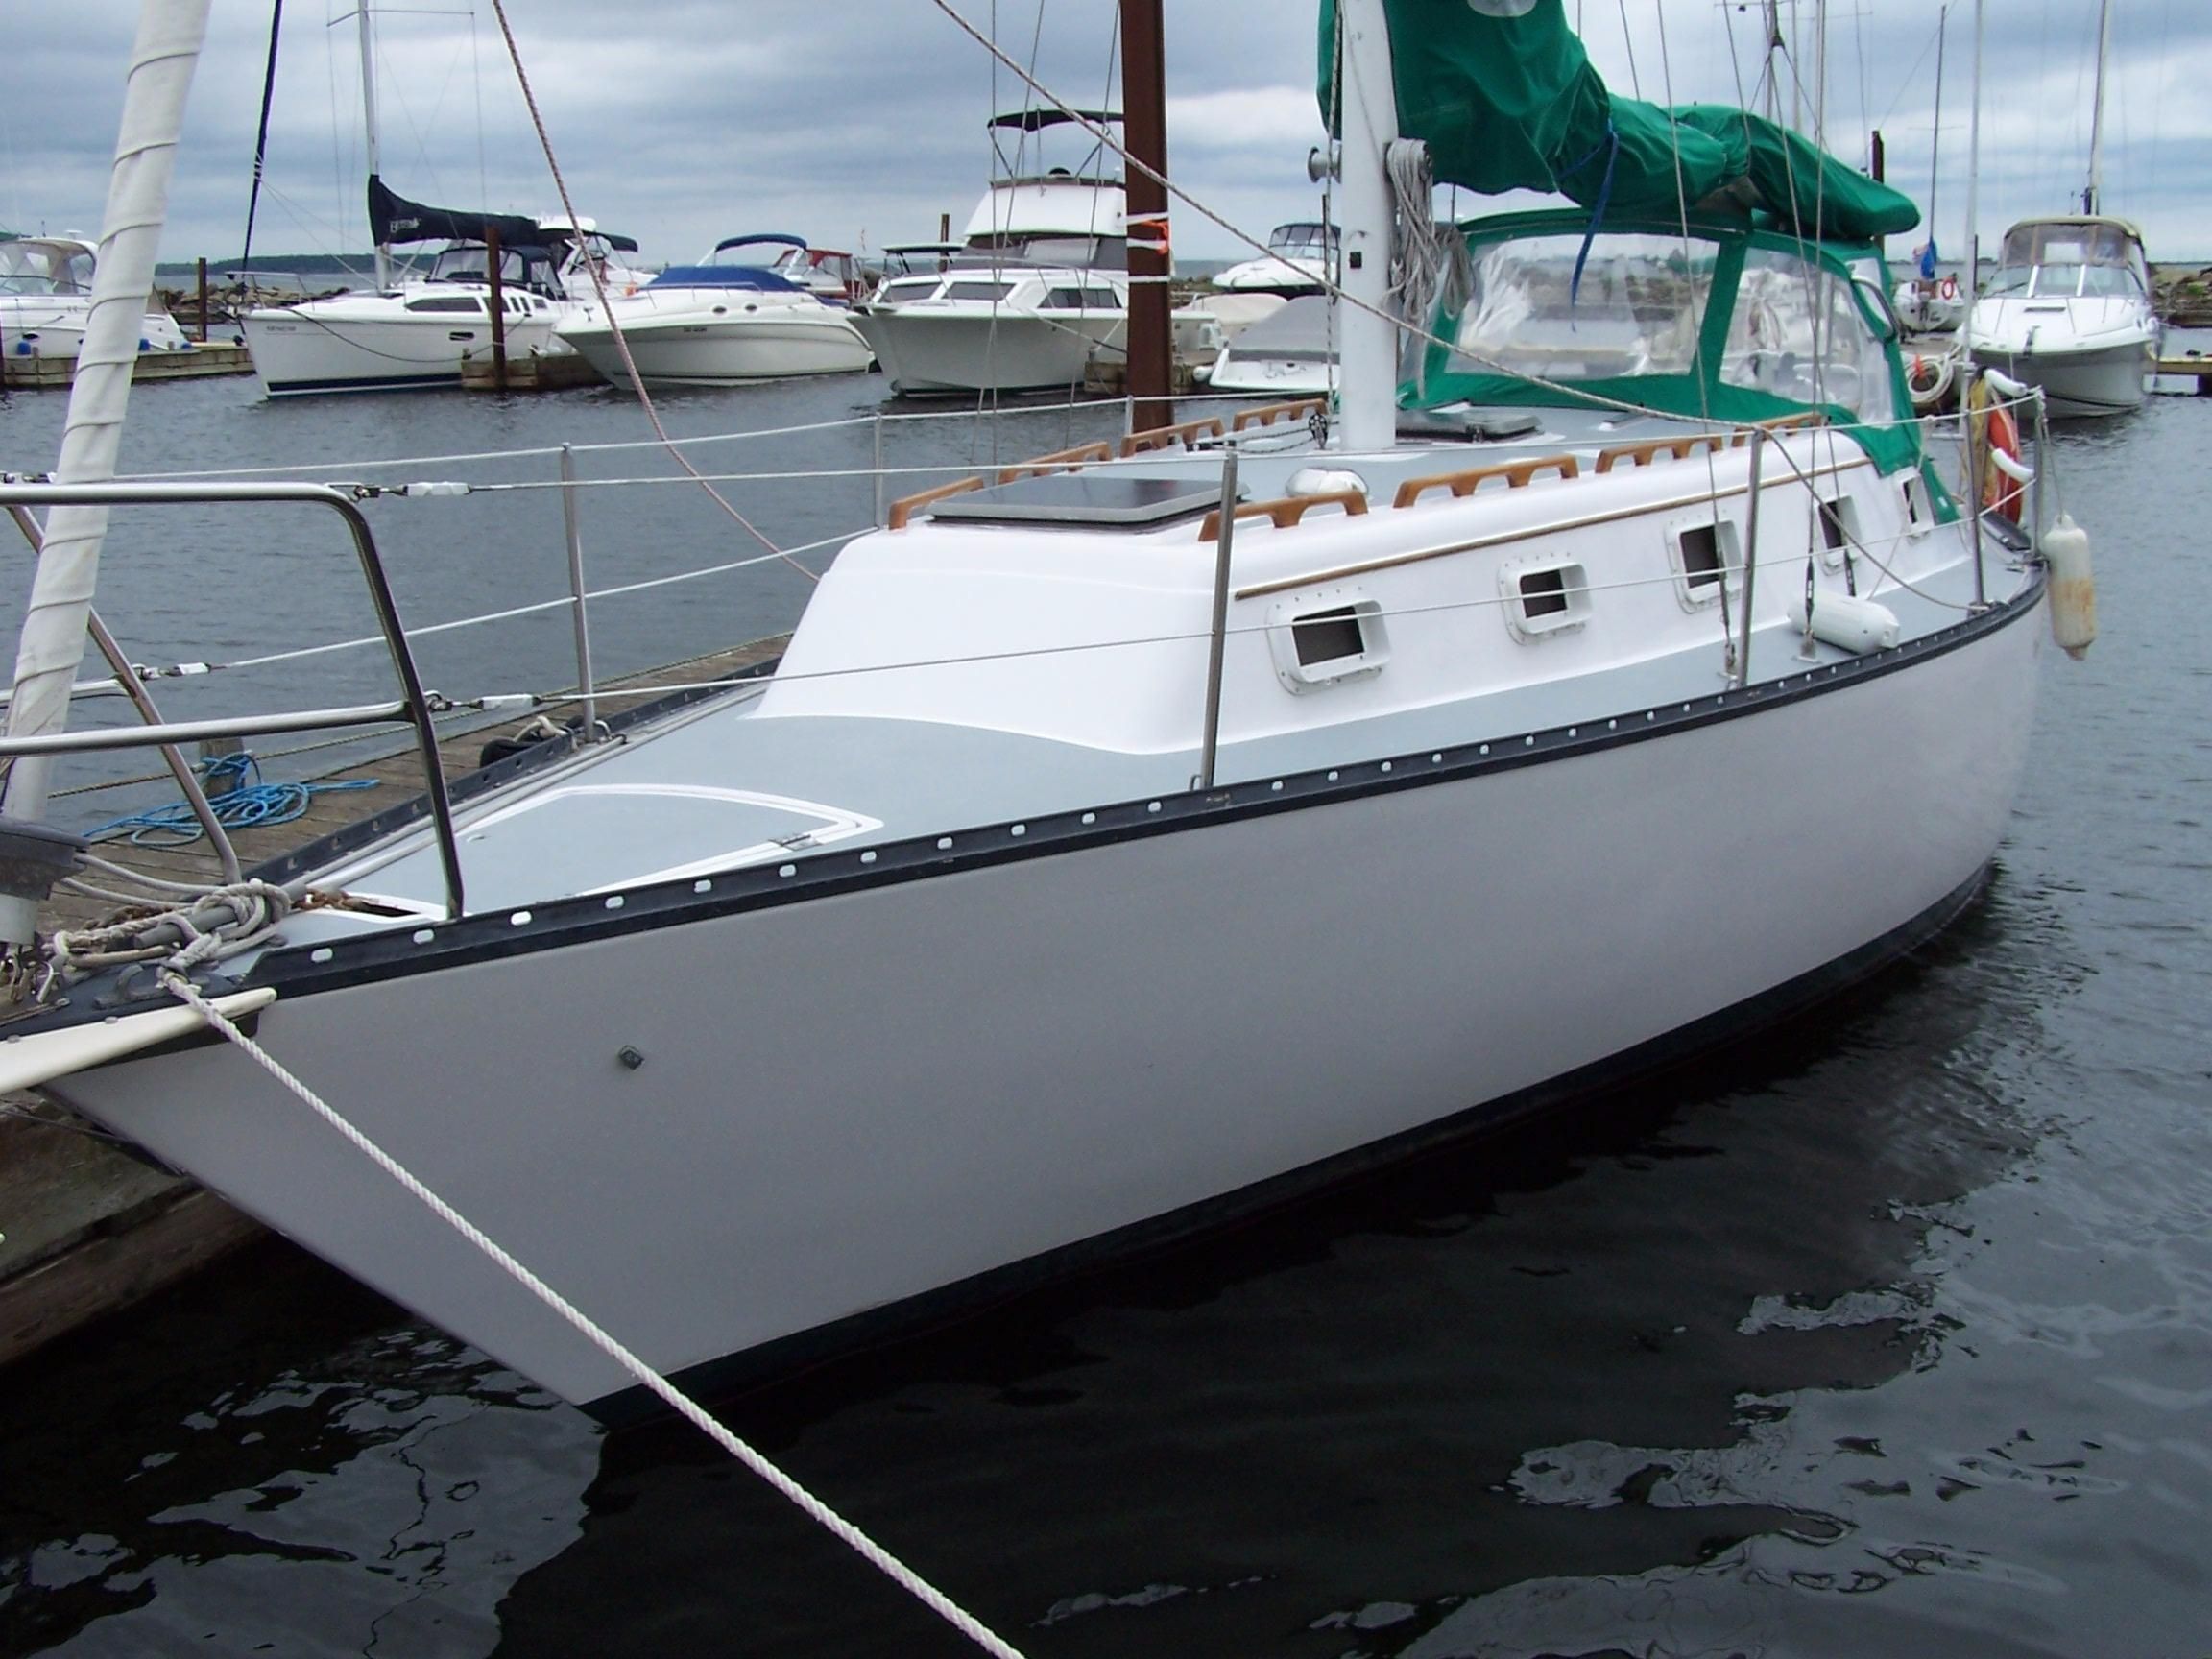 33 ft hunter sailboat for sale